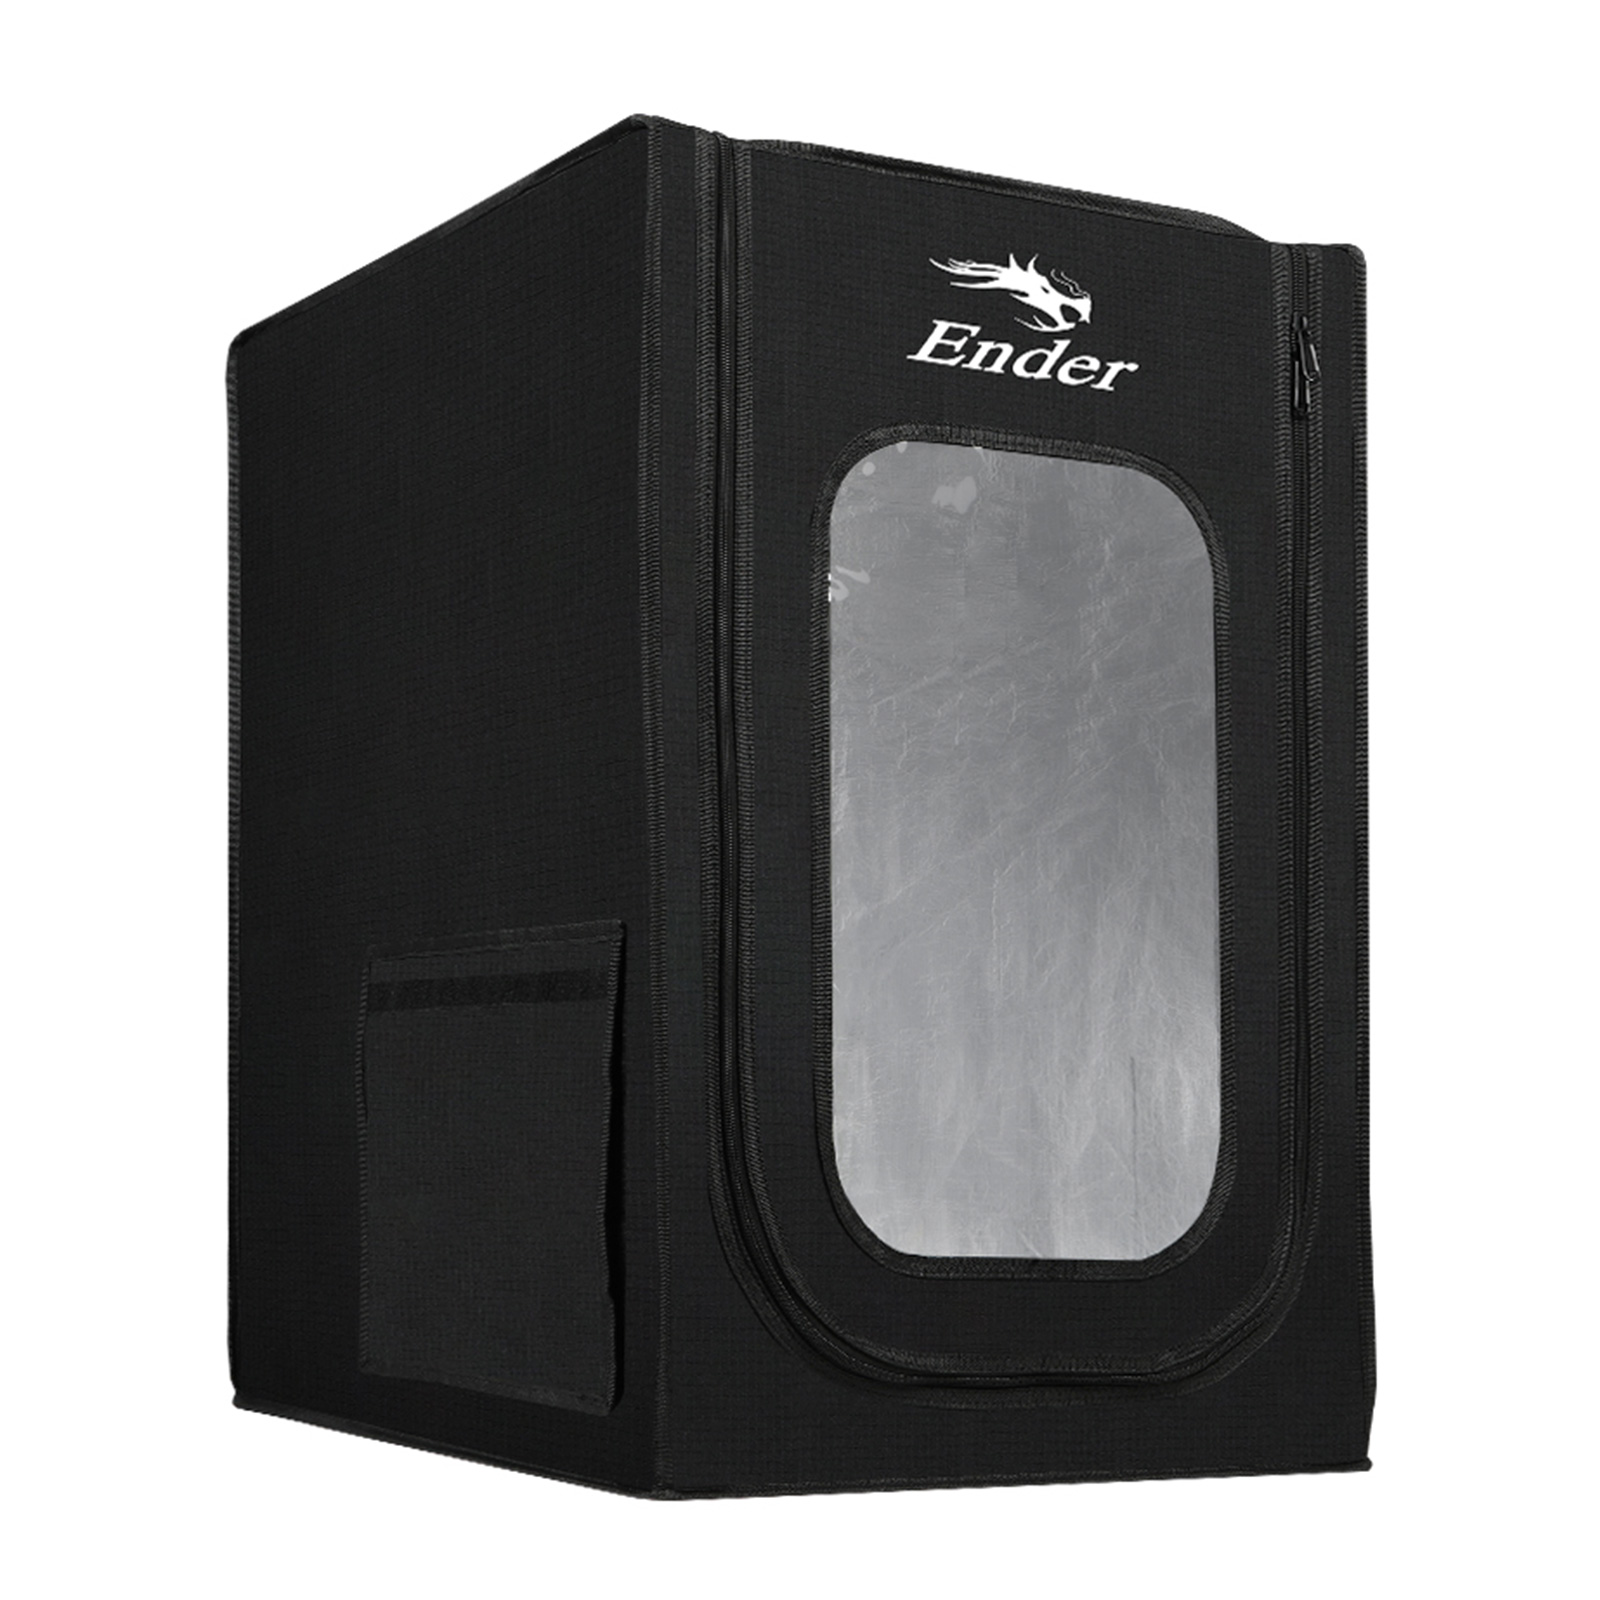 Official Ender Enclosure 3D Printer Cover for Ender 3/ Ender 3 Pro/Ender 3 V2/Ender 3S/CR-100